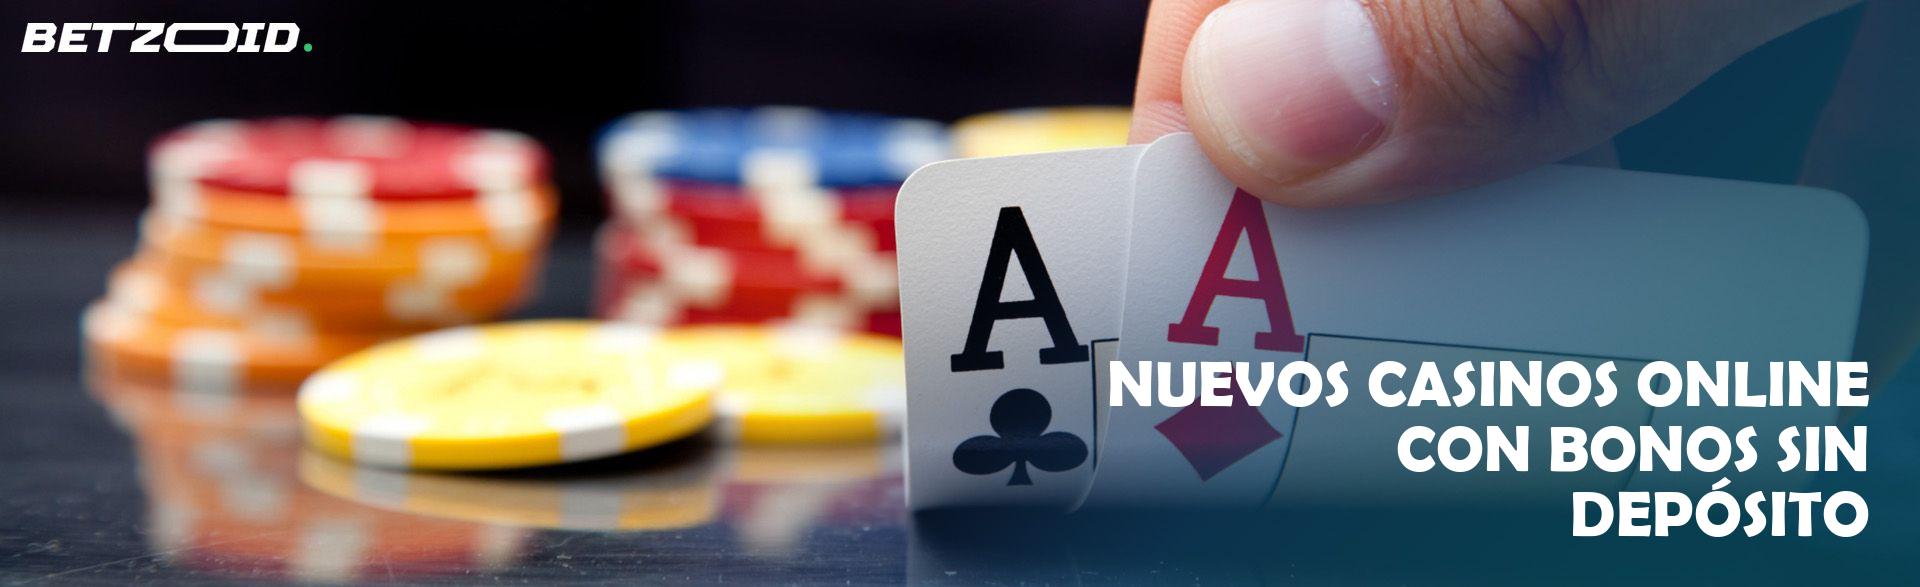 Nuevos casinos online españa bono sin deposito